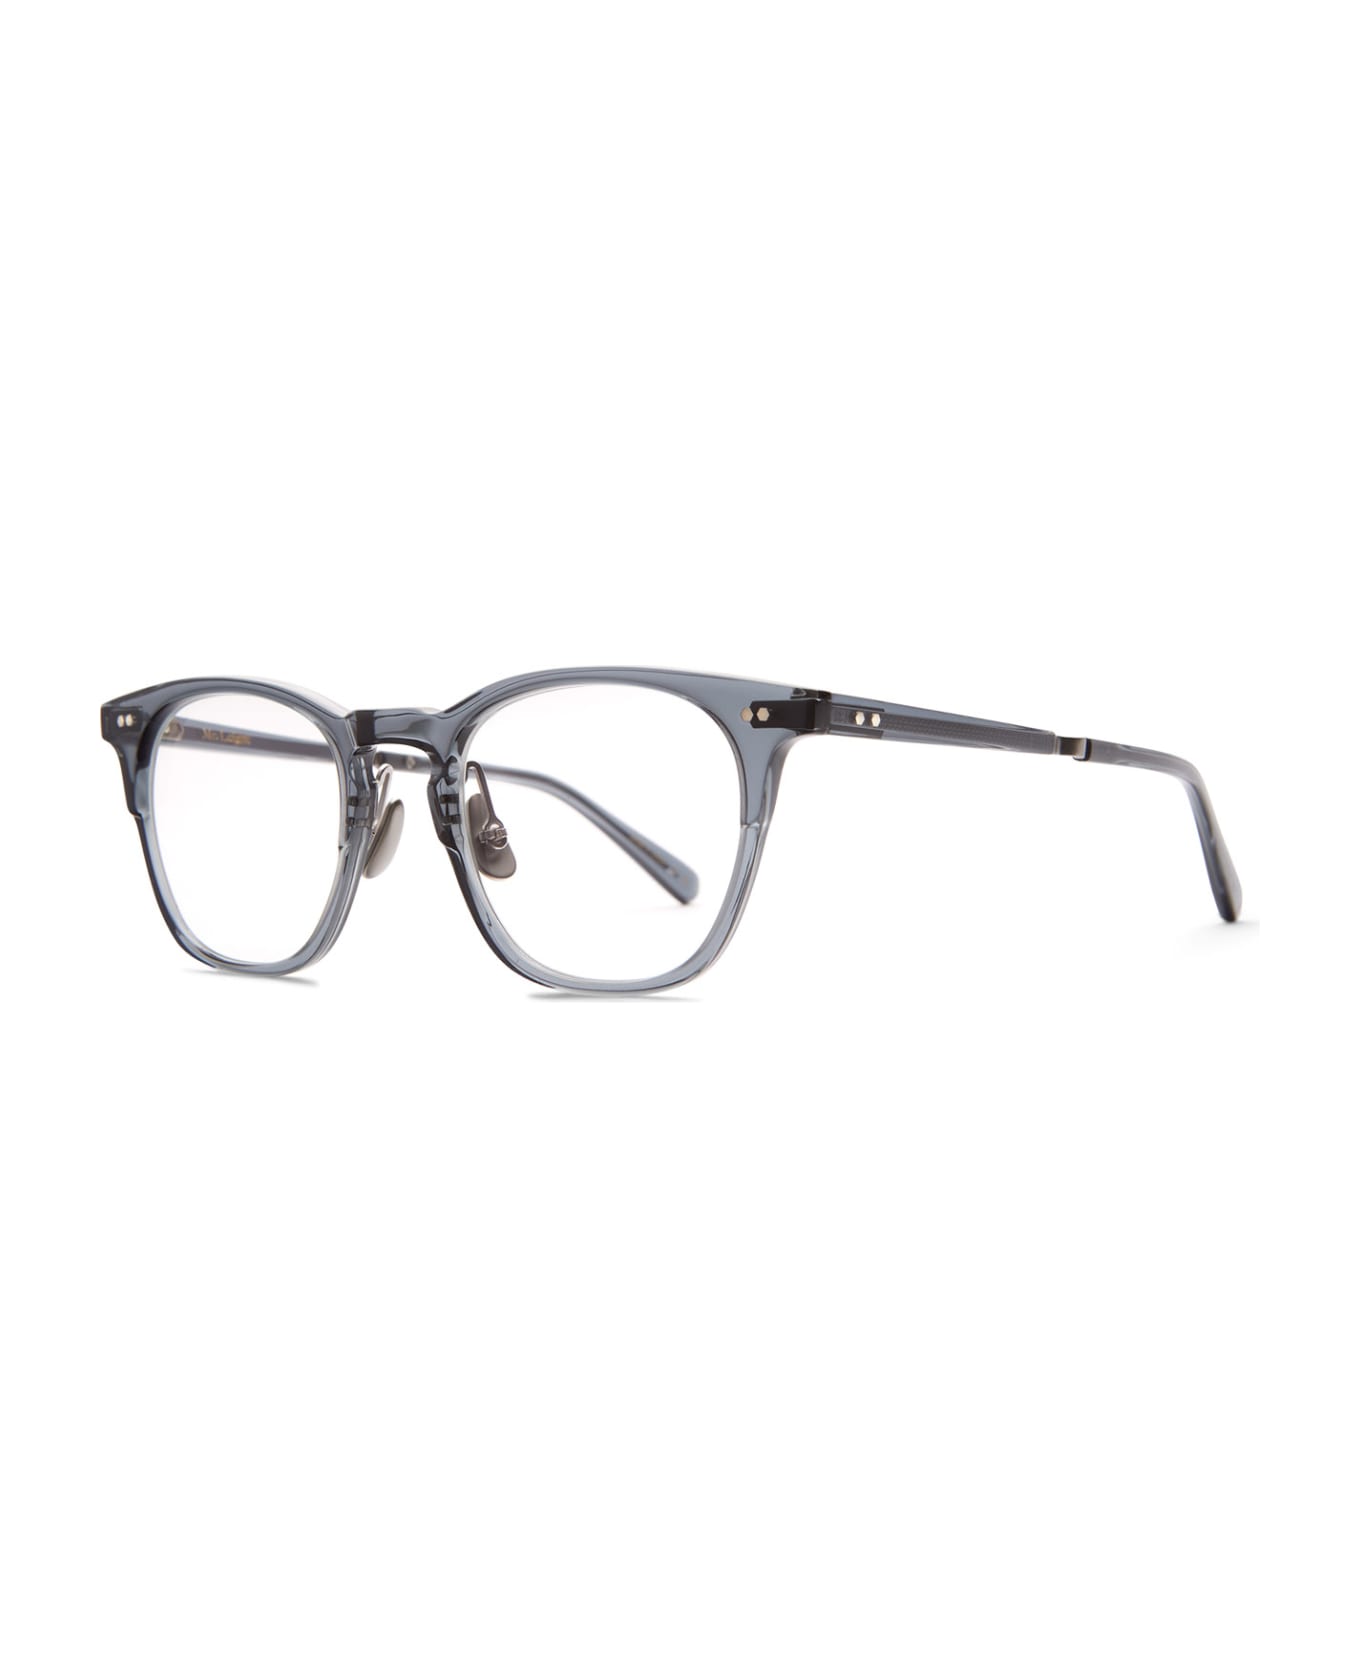 Mr. Leight Wright C Dusk-matte Platinum Glasses - Dusk-Matte Platinum アイウェア